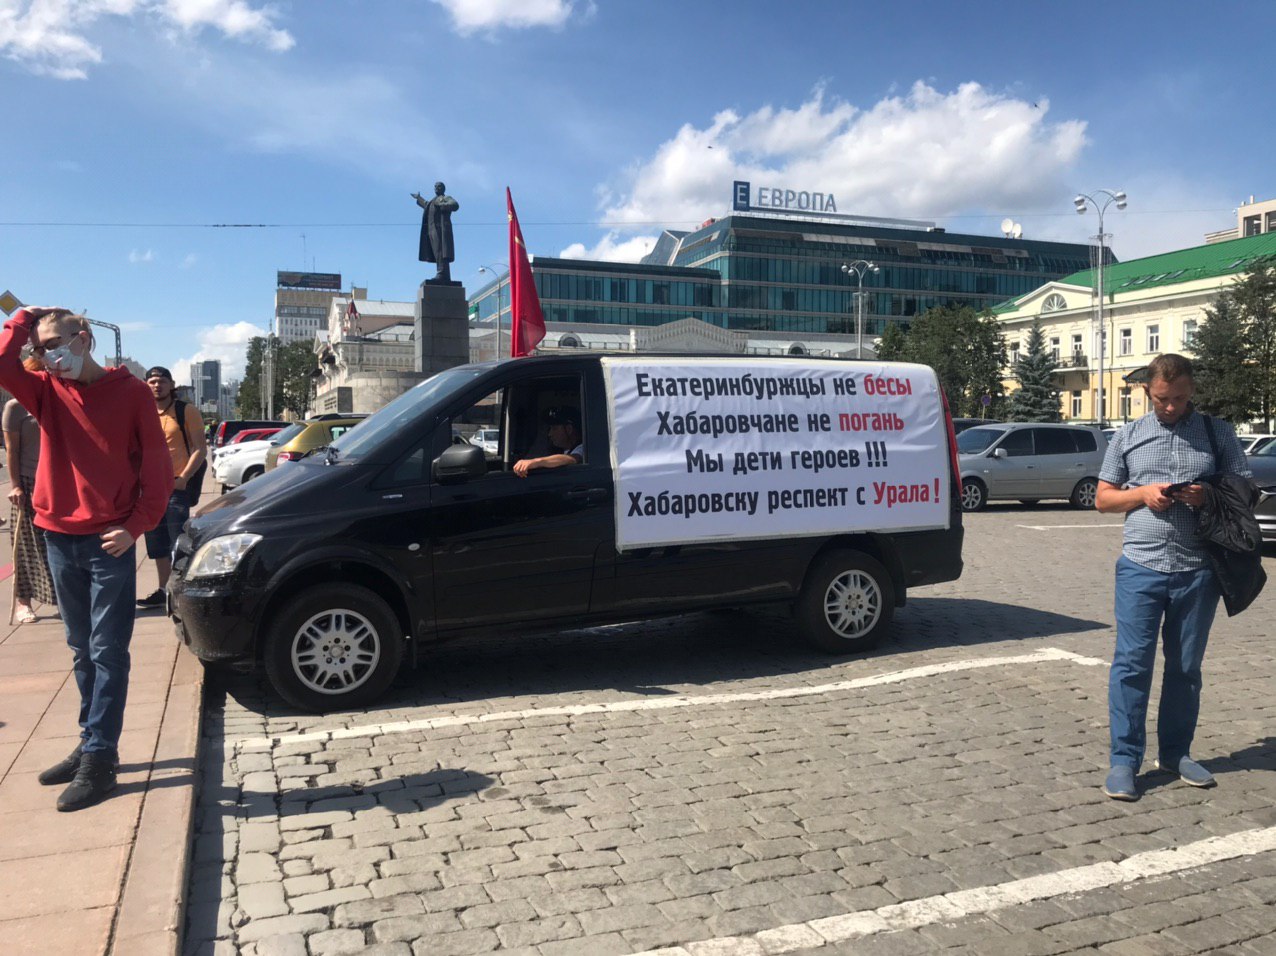 В центре Екатеринбурга задержали двух участников акций в поддержку протестующих хабаровчан